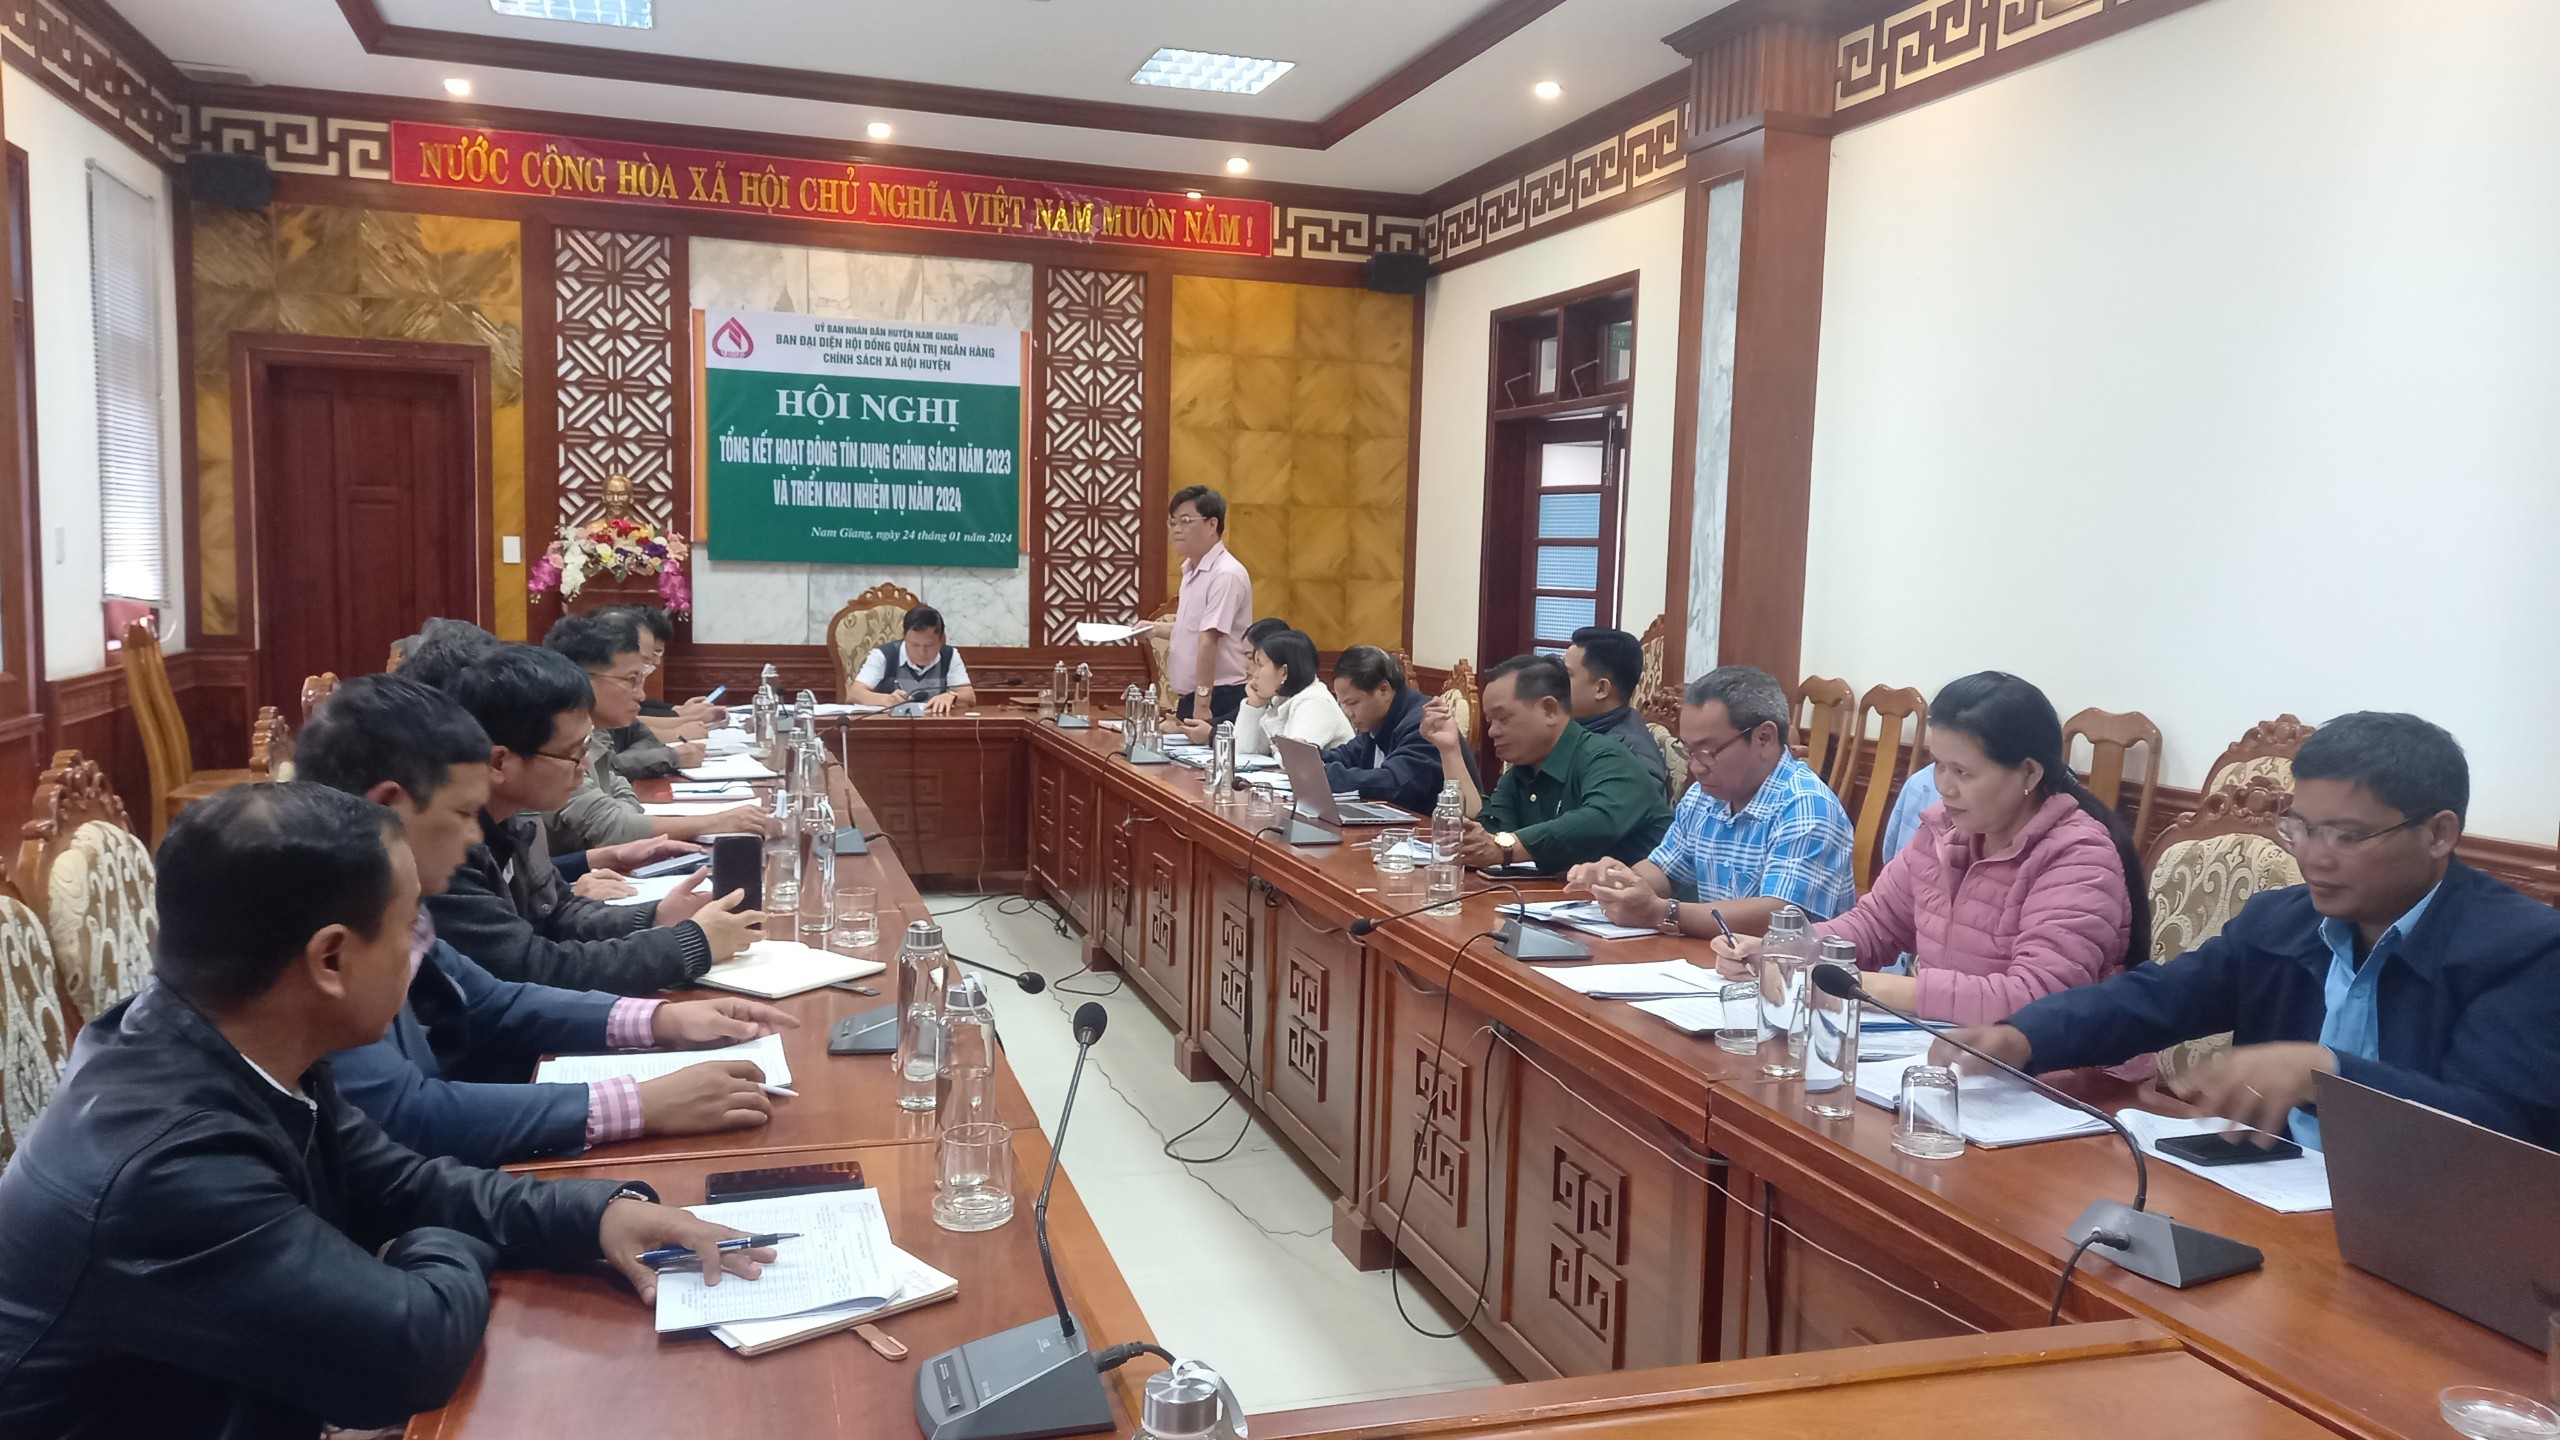 Quảng Nam: Vốn tín dụng chính sách giúp người dân huyện miền núi Nam Giang có việc làm, thoát nghèo bền vững - Ảnh 2.